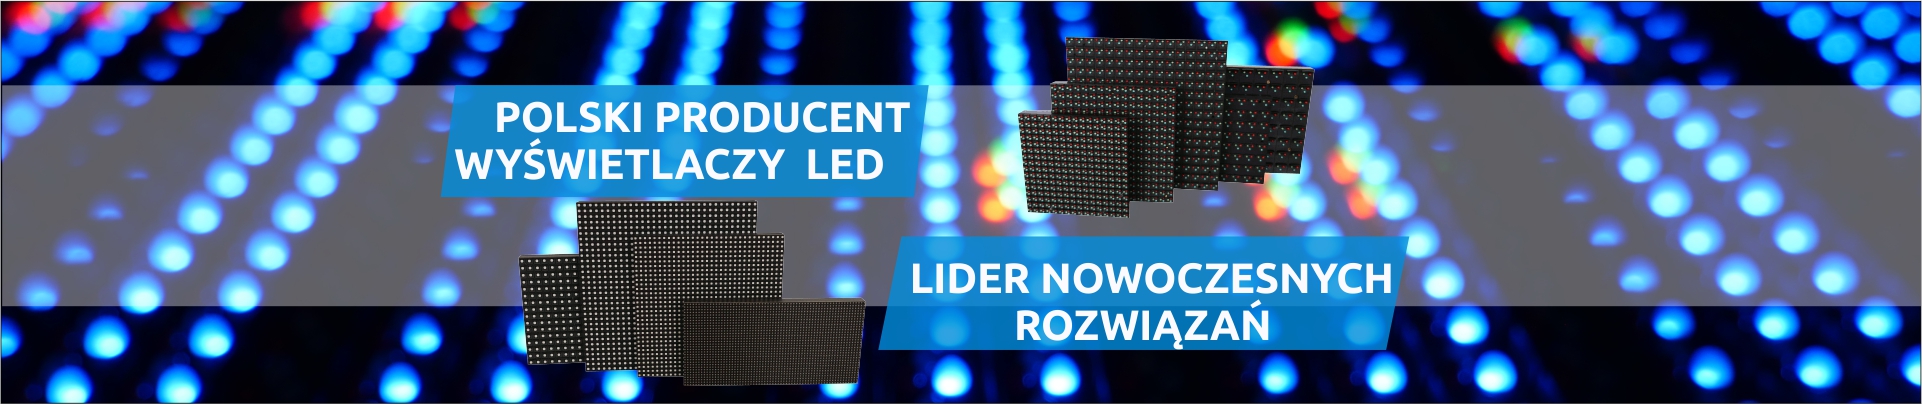 Ledtechnology_producent_LED_RGB